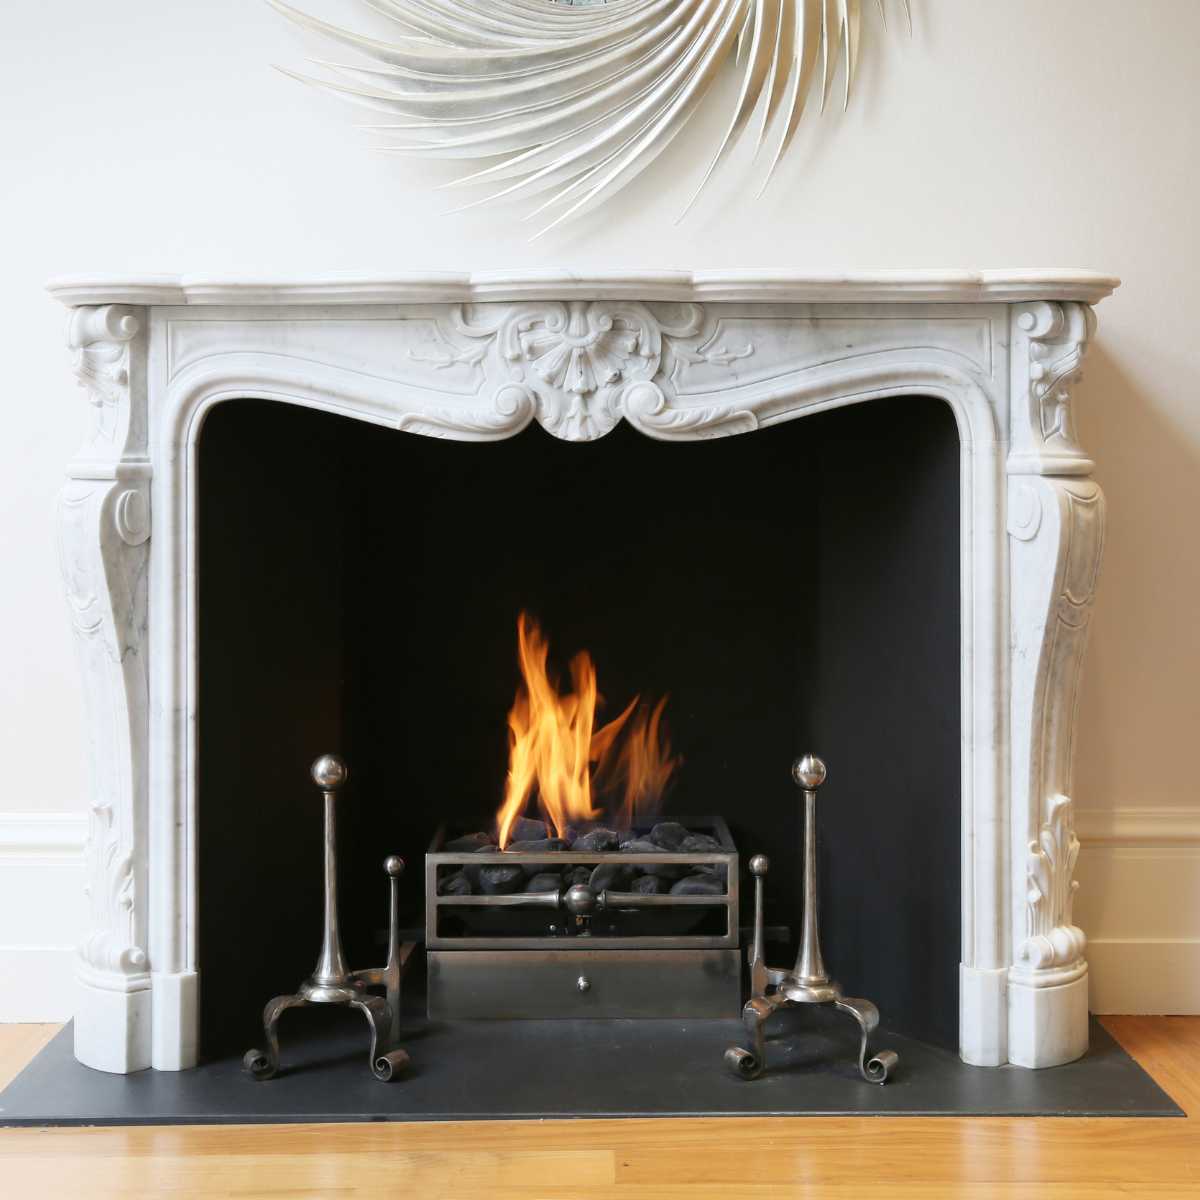 DIY fireplace ideas